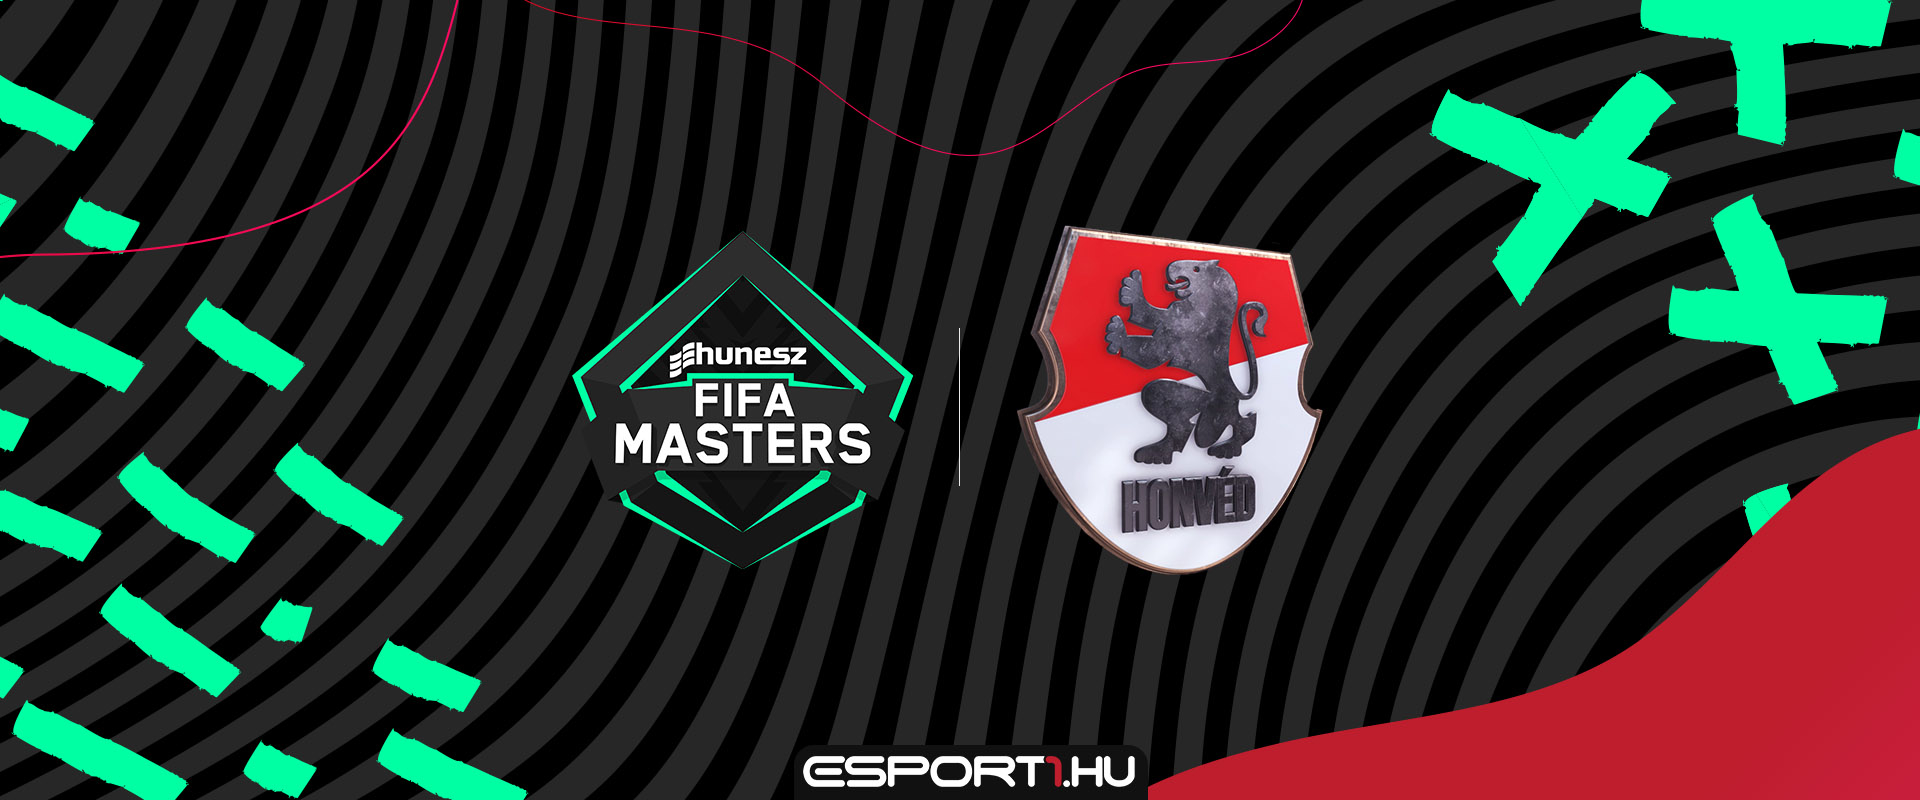 Nevezz a FIFA HUNESZ Masters első FUT versenyére!